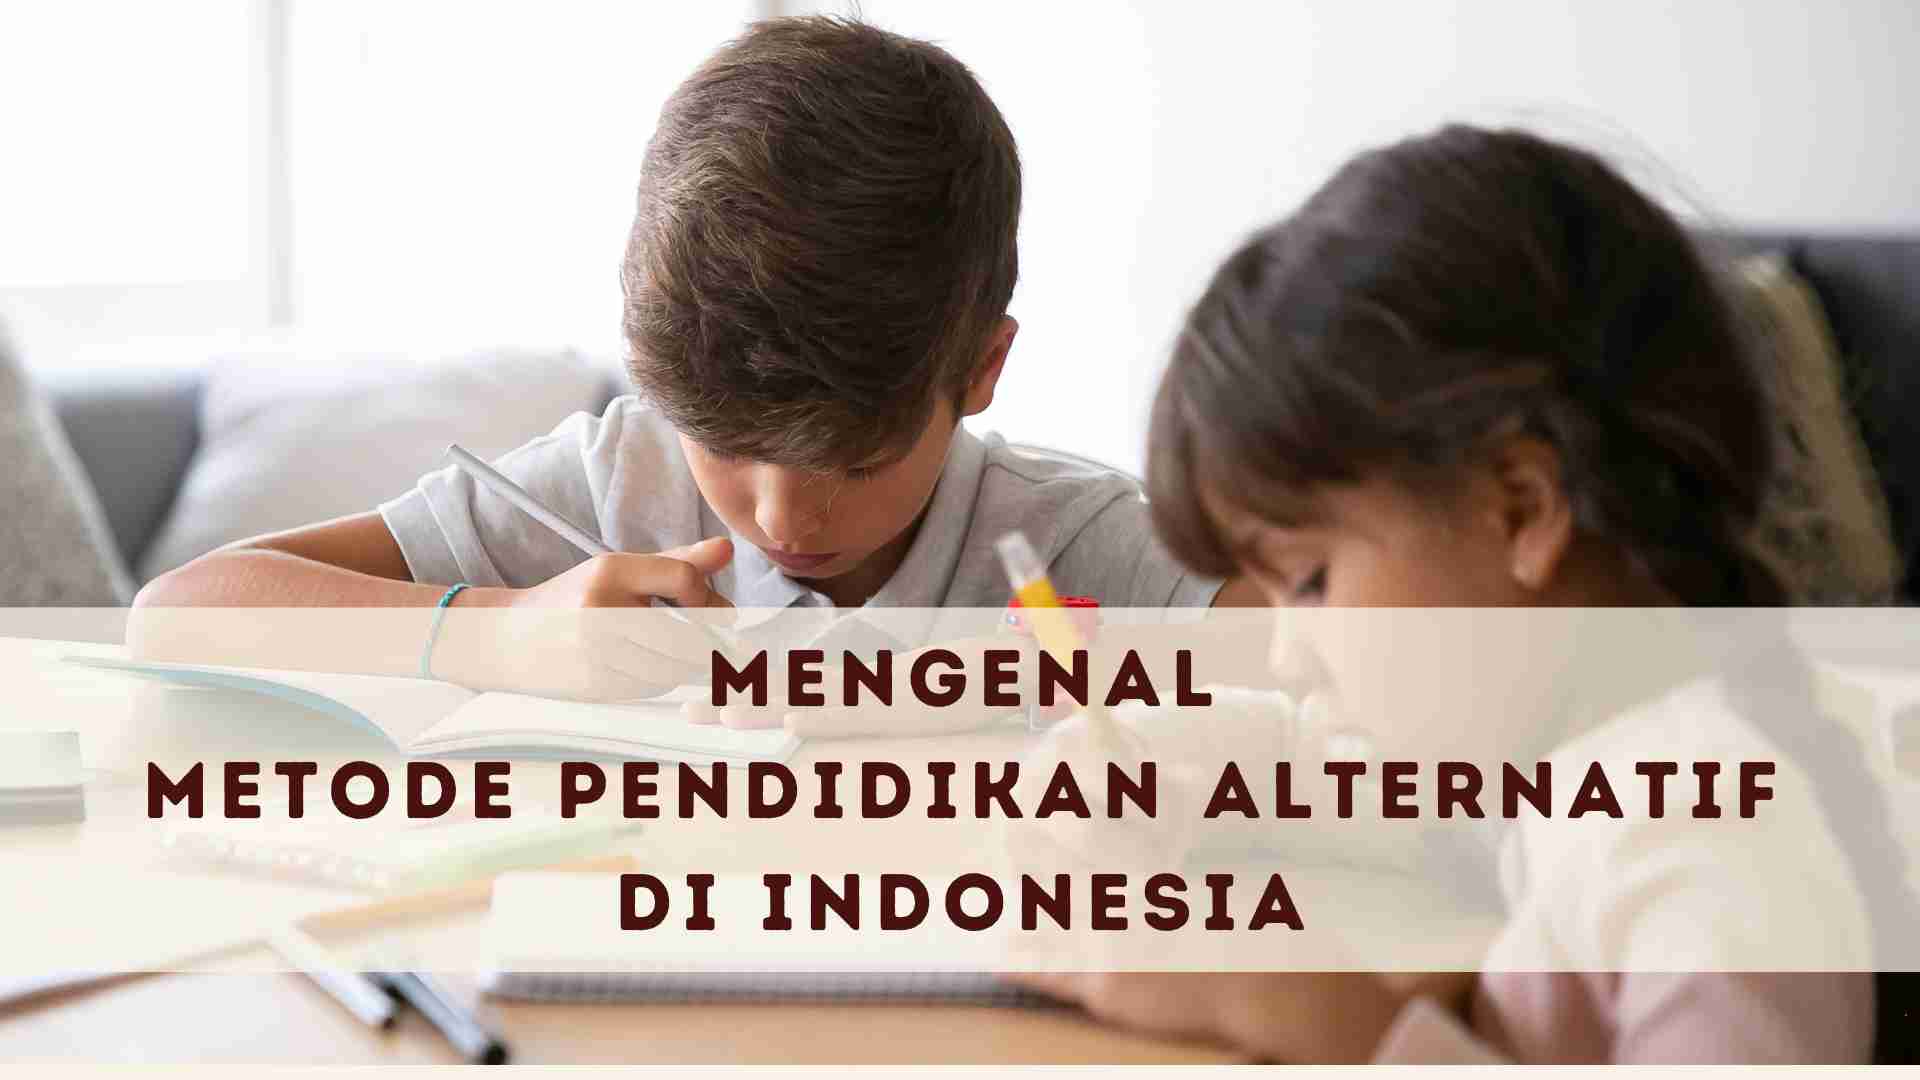 mengenal metode pendidikan alternatif di indonesia